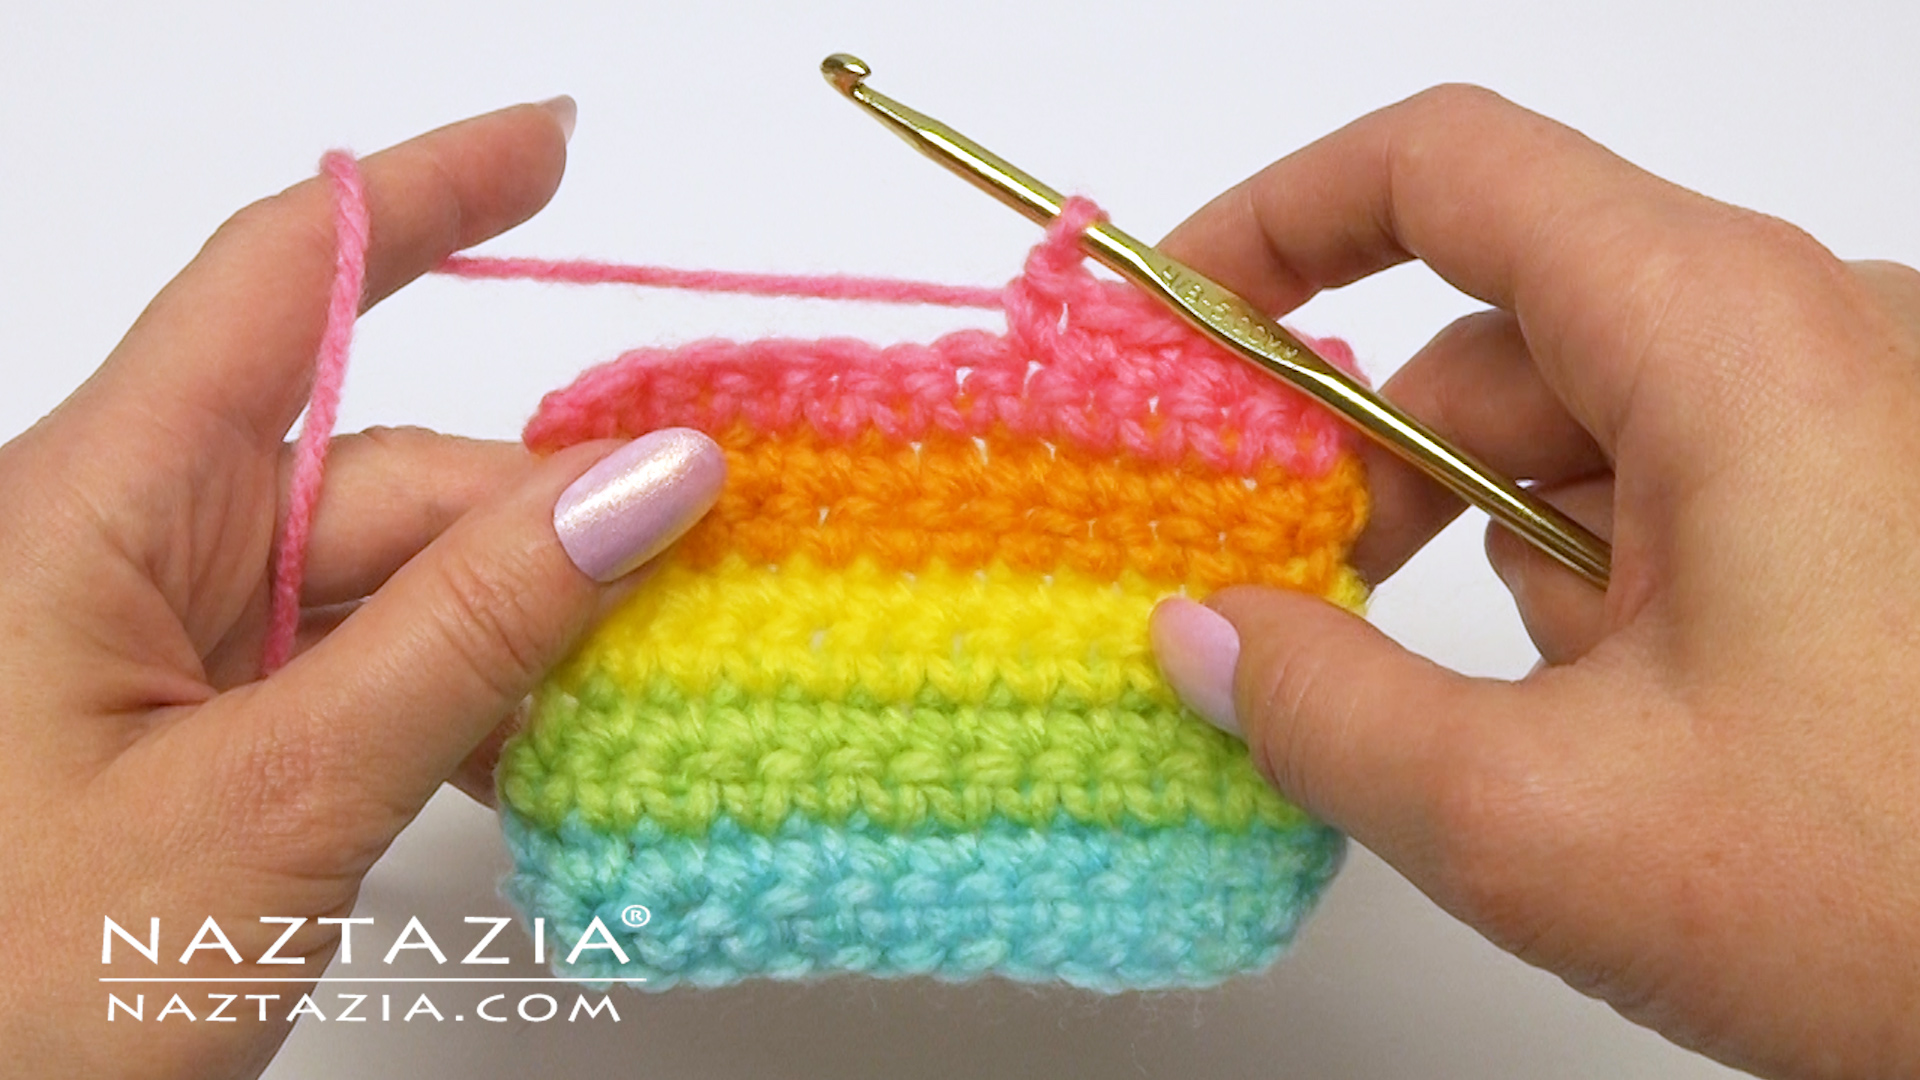 Naztazia crochet beginners